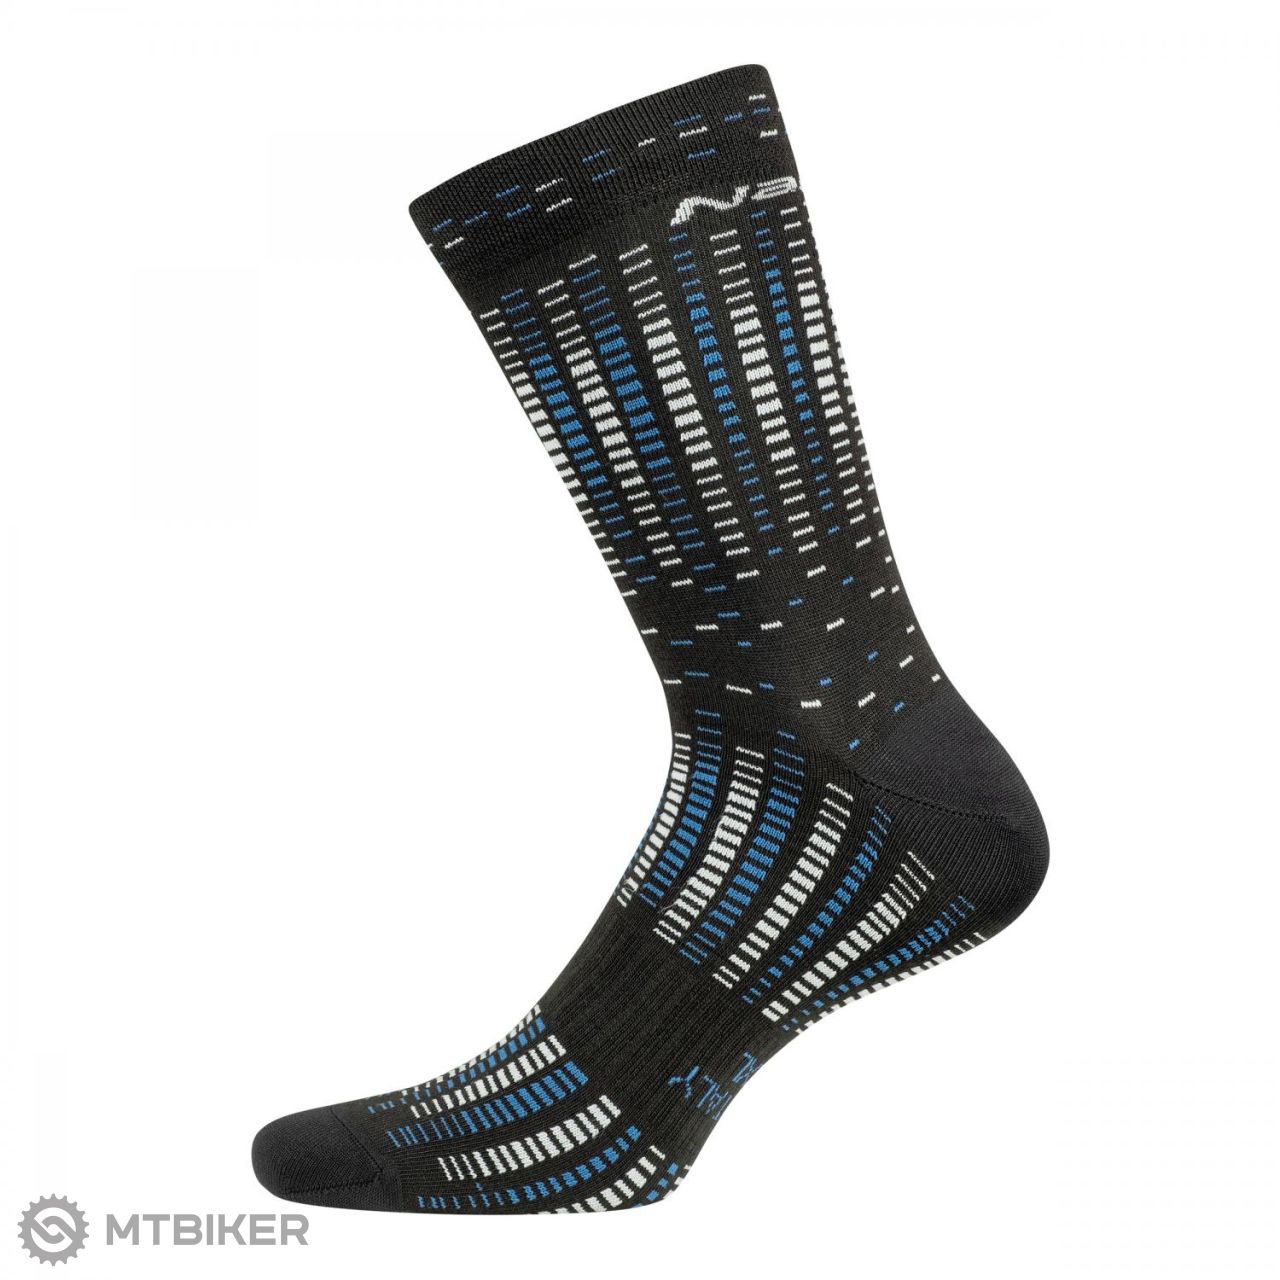 Nalini B0W COOLMAX SOCKS socks, black/blue